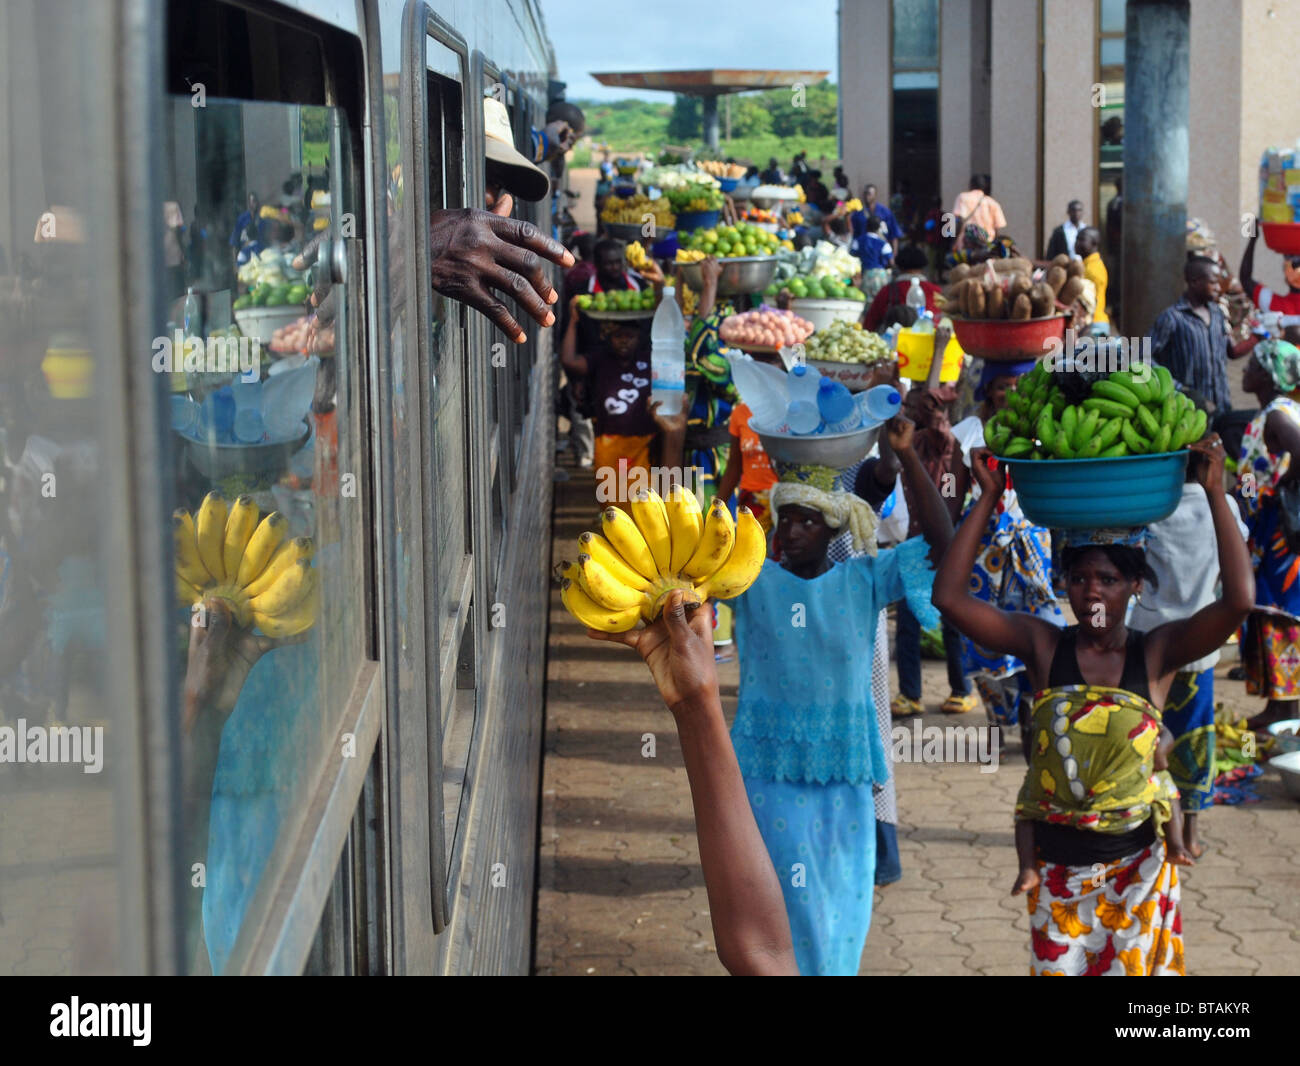 Le donne a vendere il cibo in corrispondenza di una stazione sulla linea ferroviaria da Ouagadougou (Burkina Faso) ad Abidjan (Costa d Avorio) Foto Stock